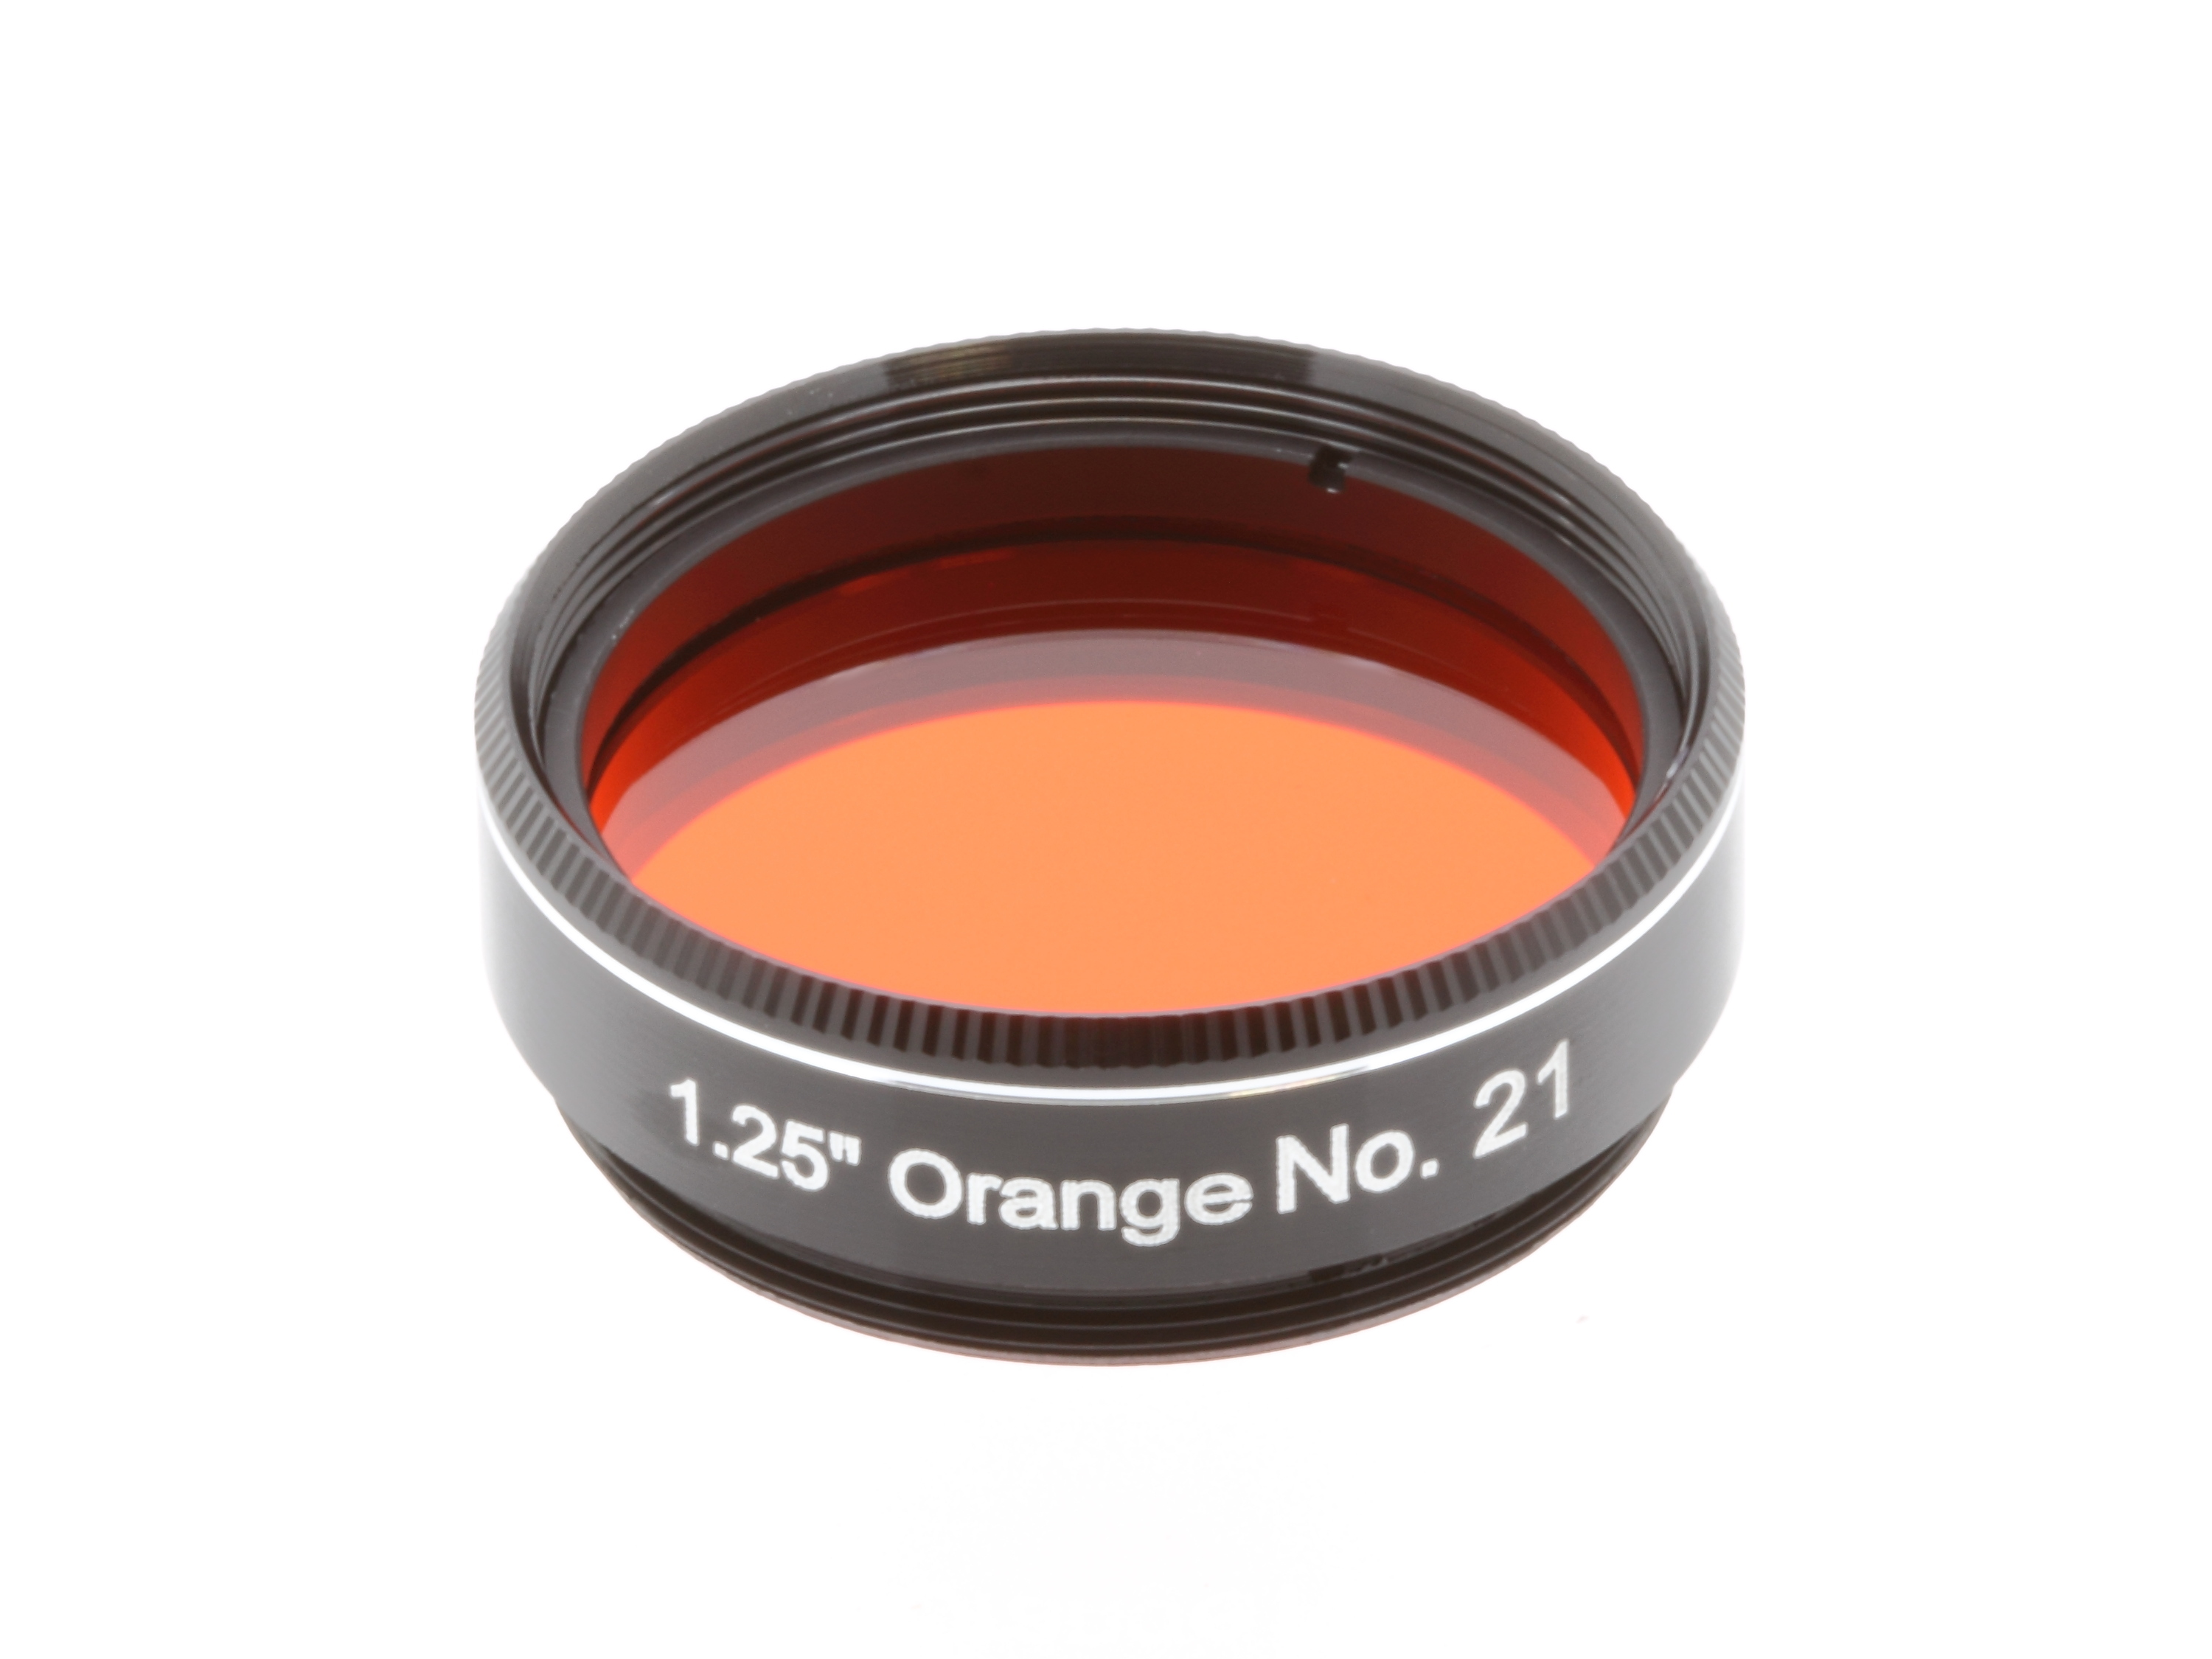 EXPLORE SCIENTIFIC Filtre 1.25" Orange Nr.21